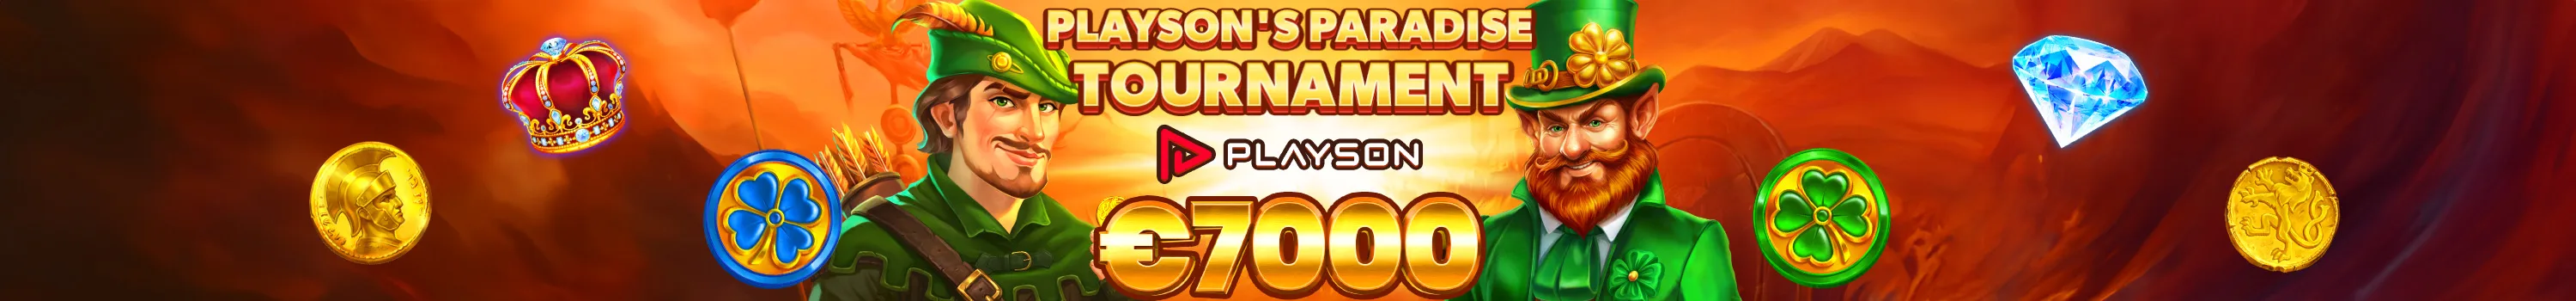 Playson's Paradise Tournament